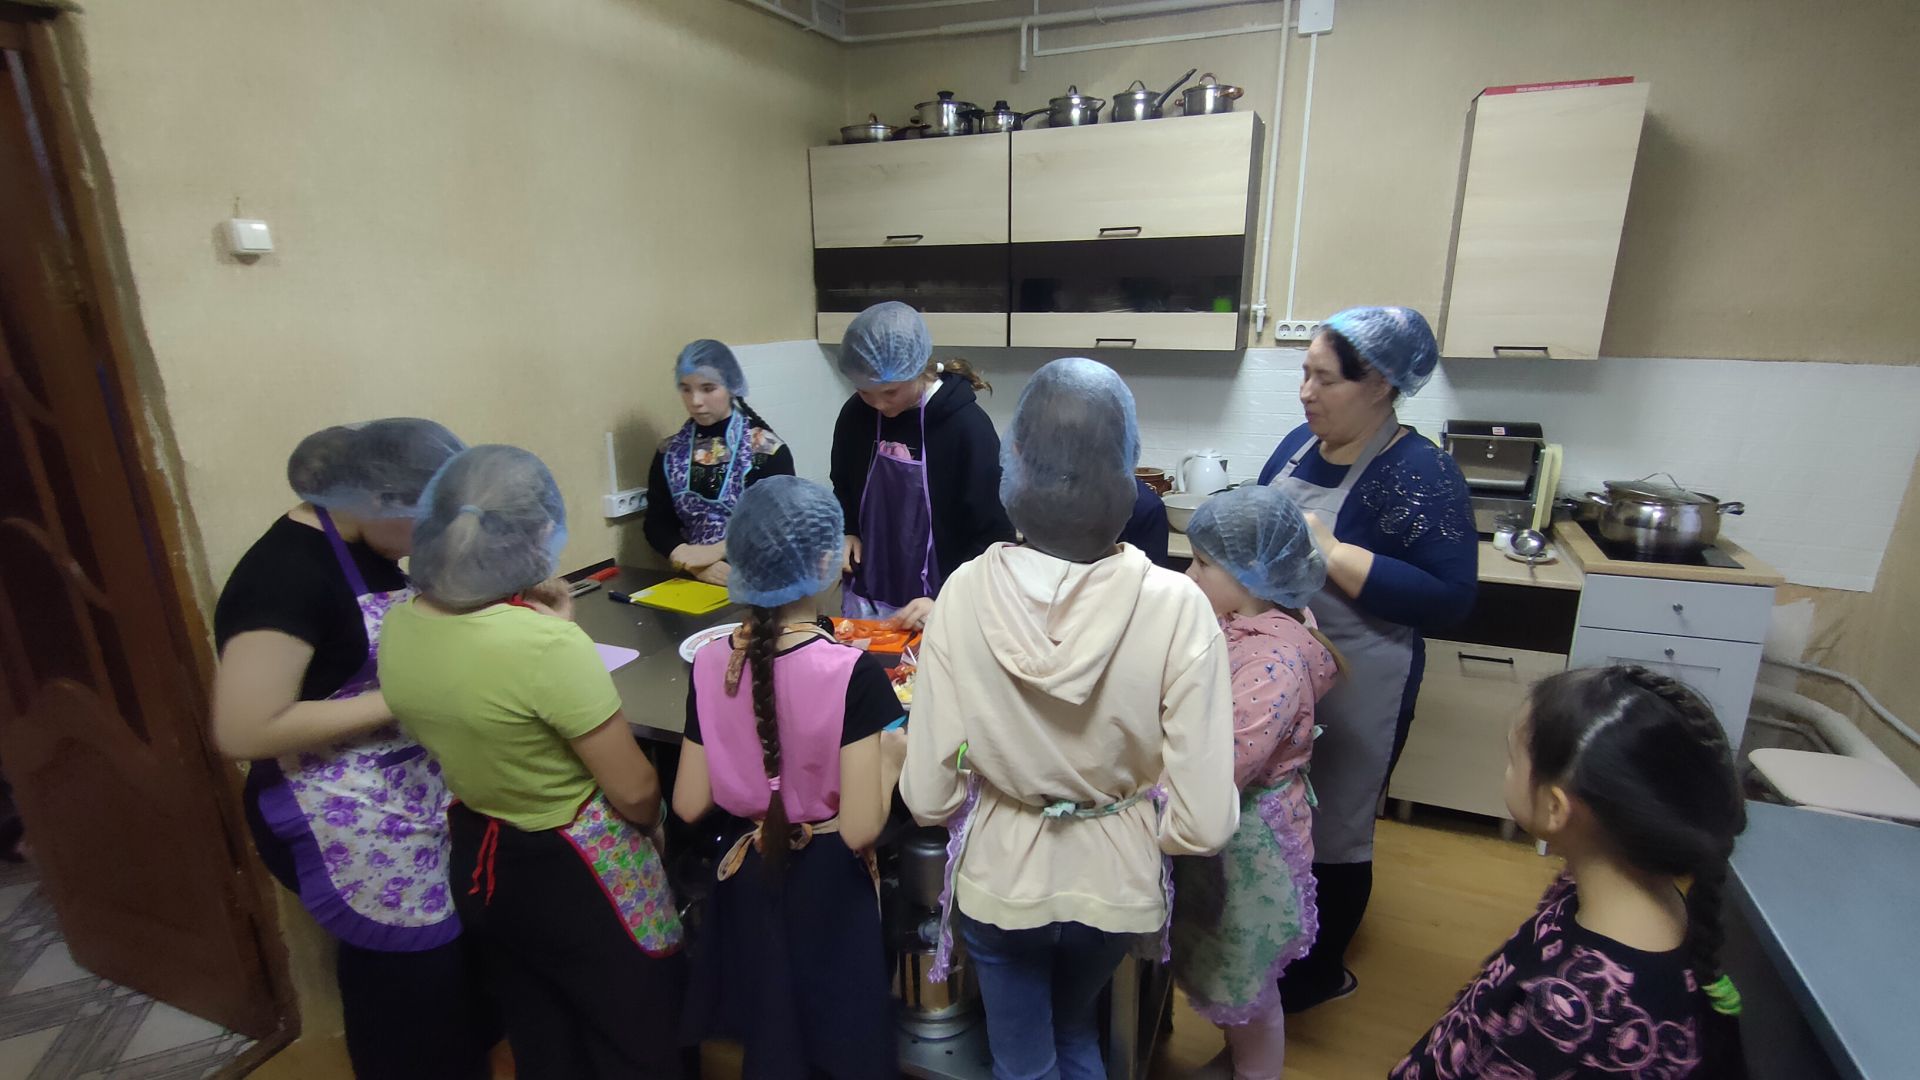 Состоялись первые занятия кружков проекта "Кухня и мастерская Хозяюшки"